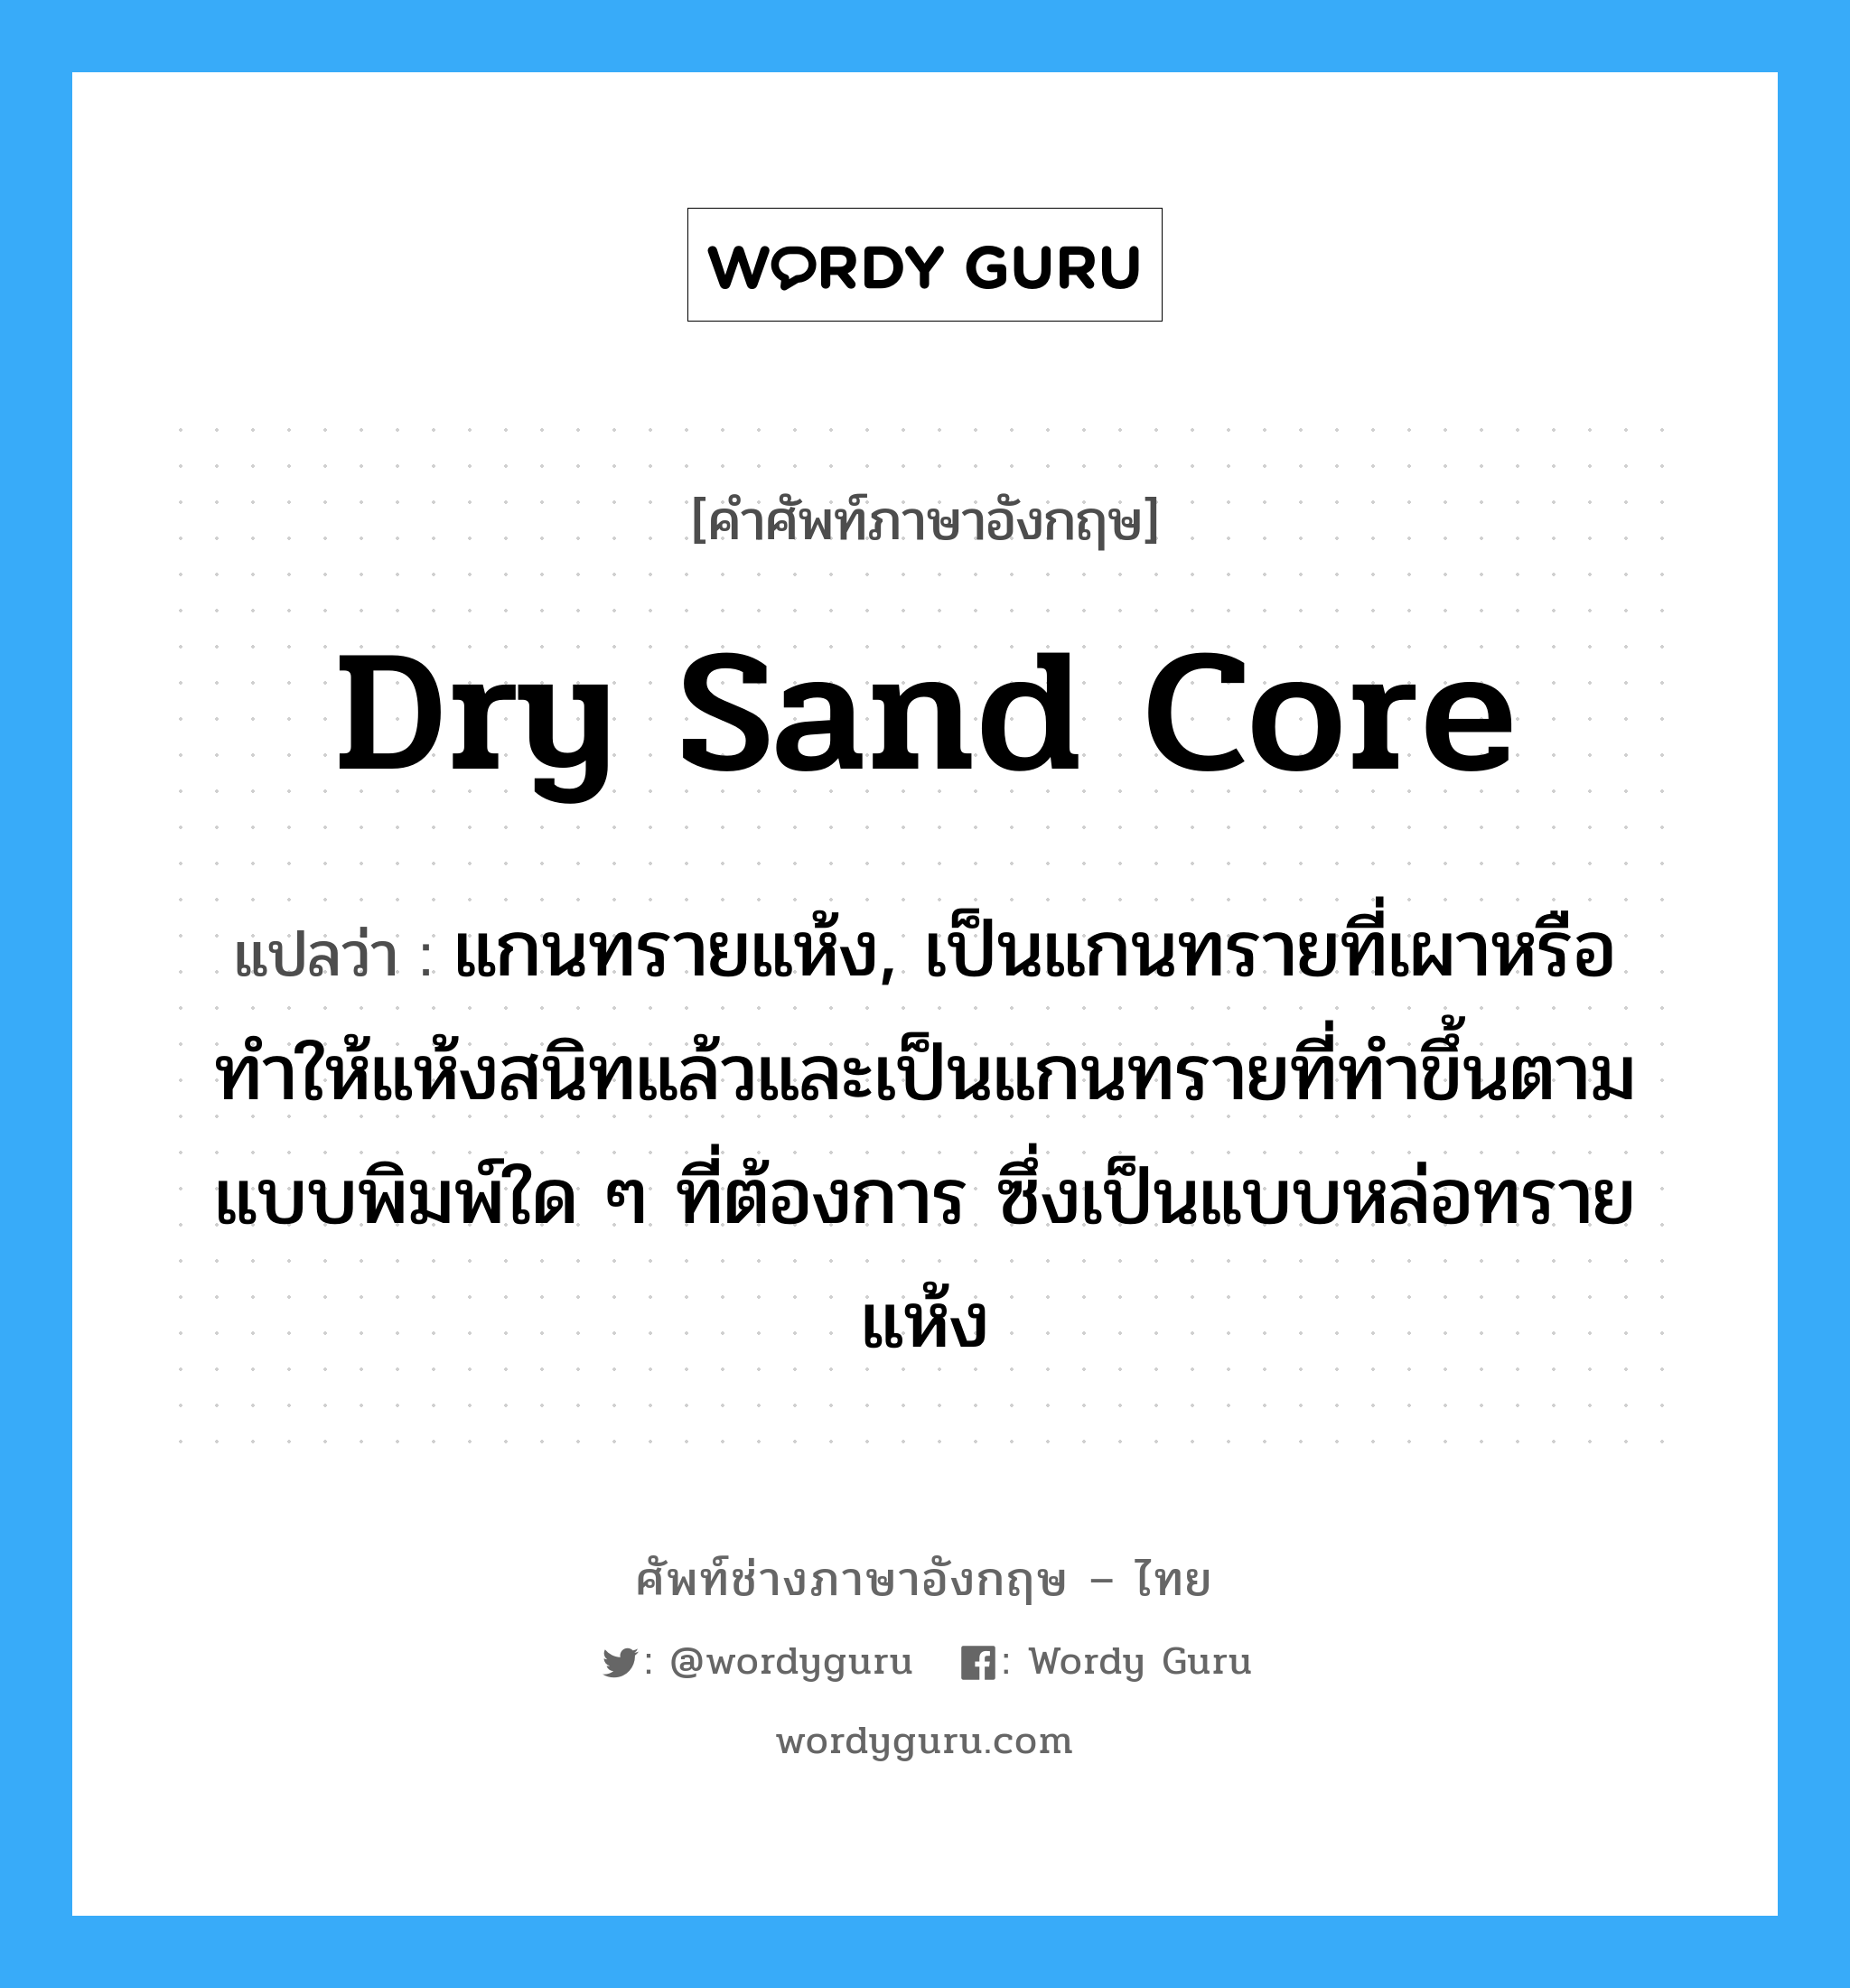 dry sand core แปลว่า?, คำศัพท์ช่างภาษาอังกฤษ - ไทย dry sand core คำศัพท์ภาษาอังกฤษ dry sand core แปลว่า แกนทรายแห้ง, เป็นแกนทรายที่เผาหรือทำให้แห้งสนิทแล้วและเป็นแกนทรายที่ทำขึ้นตามแบบพิมพ์ใด ๆ ที่ต้องการ ซึ่งเป็นแบบหล่อทรายแห้ง